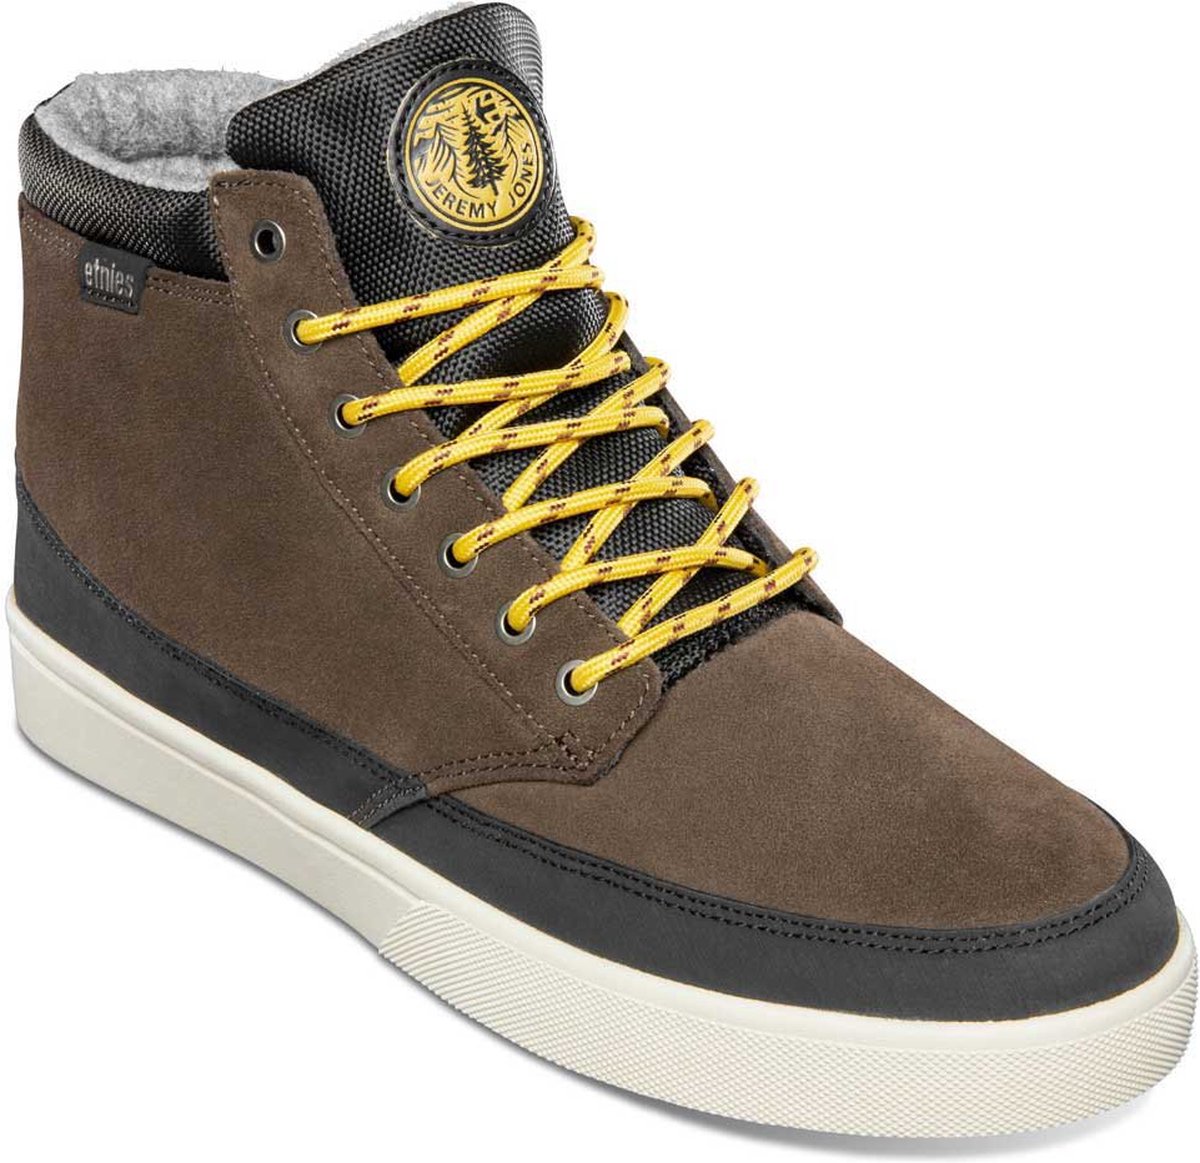 ETNIES Jameson HTW Sneakers Heren - Brown / Black / Tan - EU 42